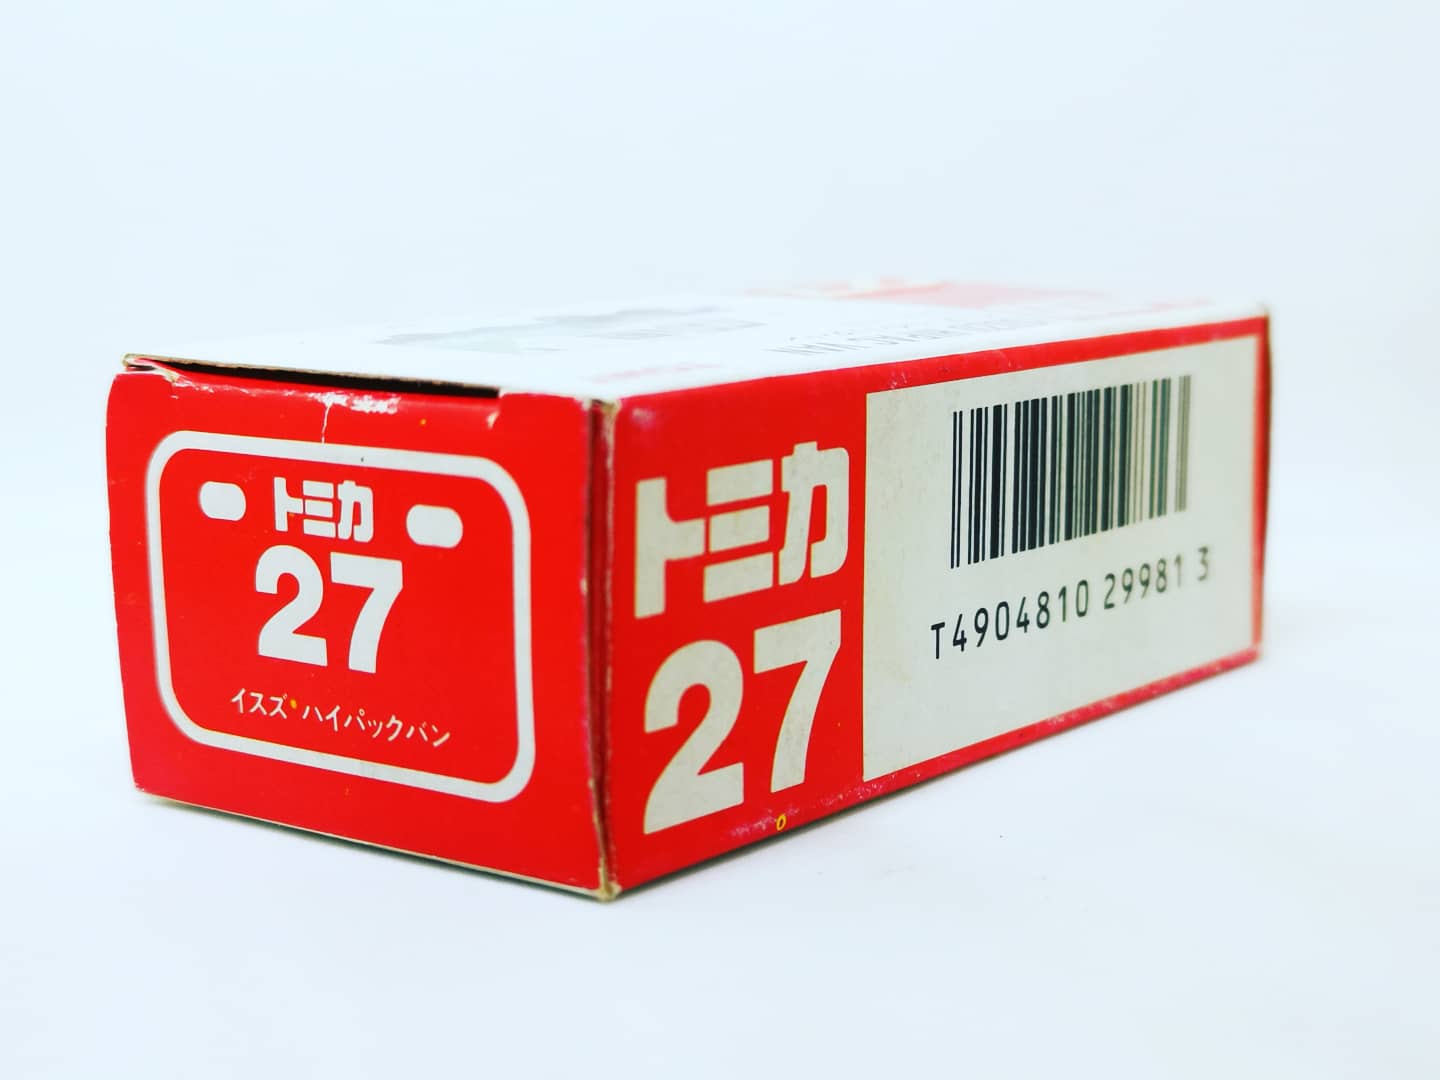 Tomica #27 Isuzu
Hipac Van footwork
Made in Japan